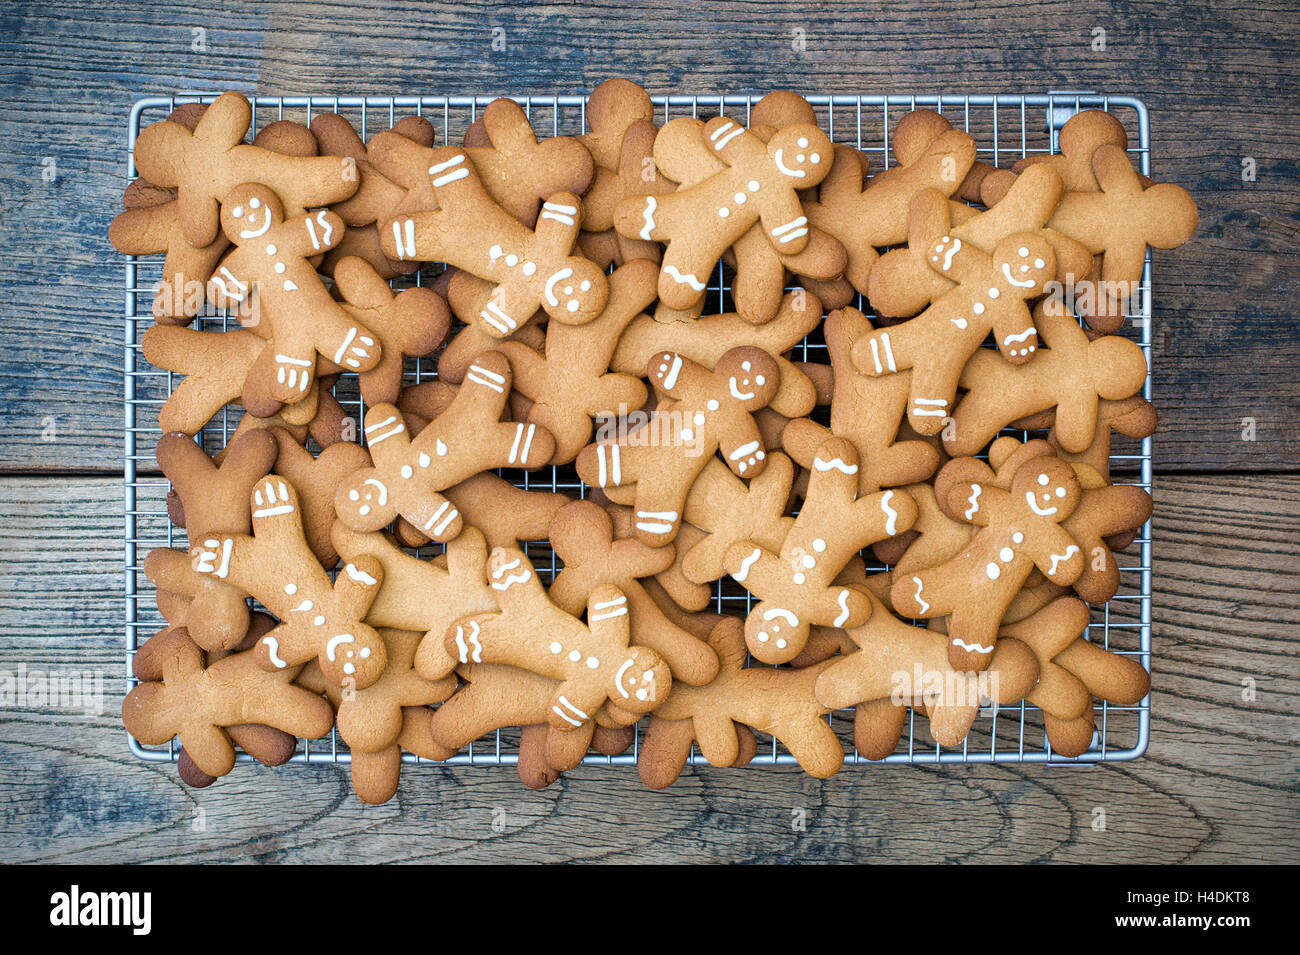 Hombres de pan de jengibre las galletas sobre una rejilla metálica Foto de stock